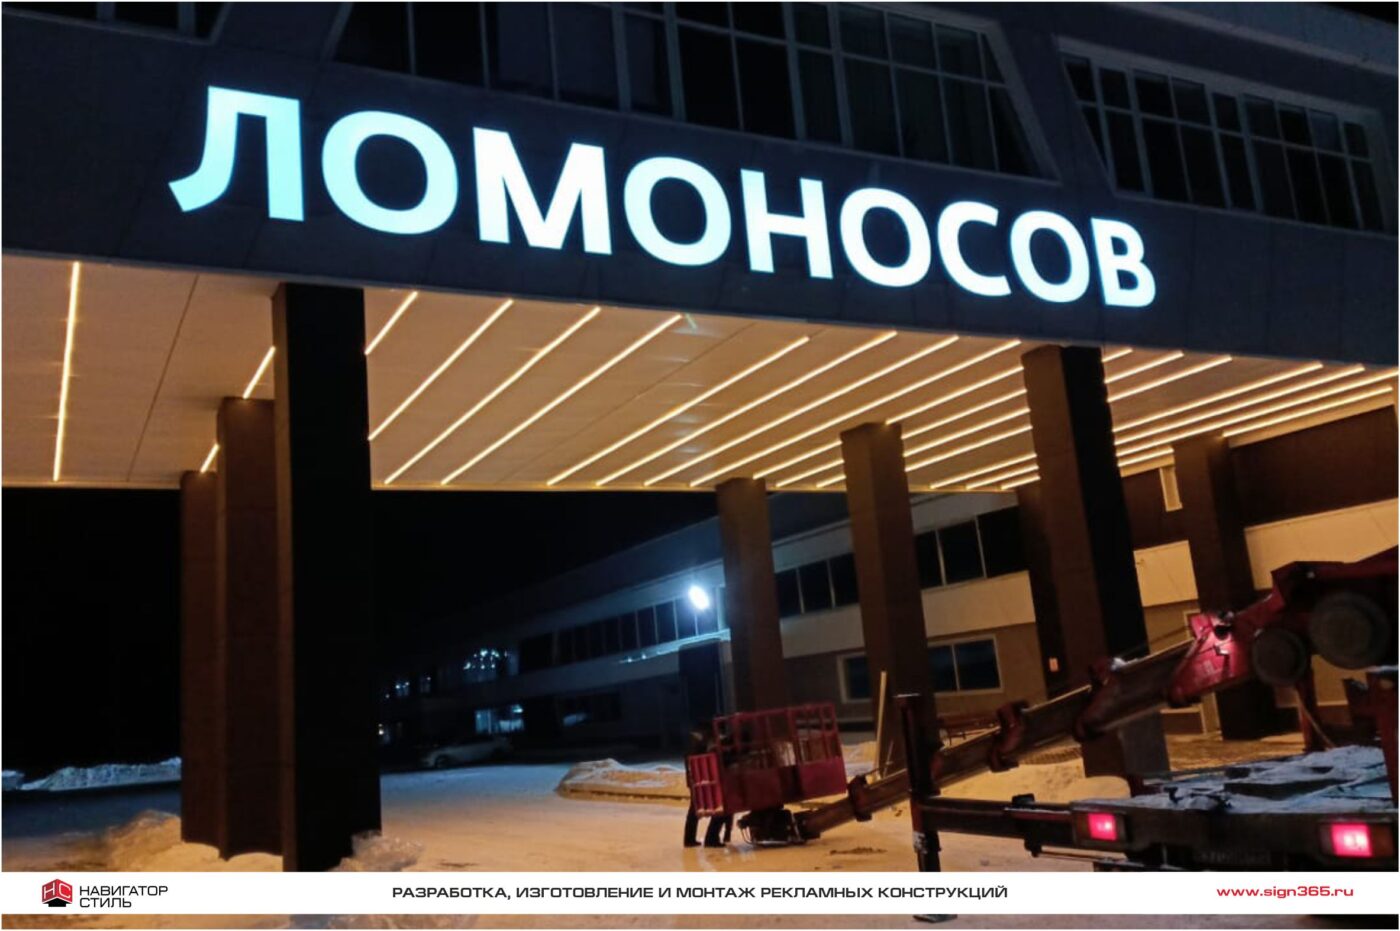 Фасадная вывеска для Инновационно-технологического центра Ломоносов